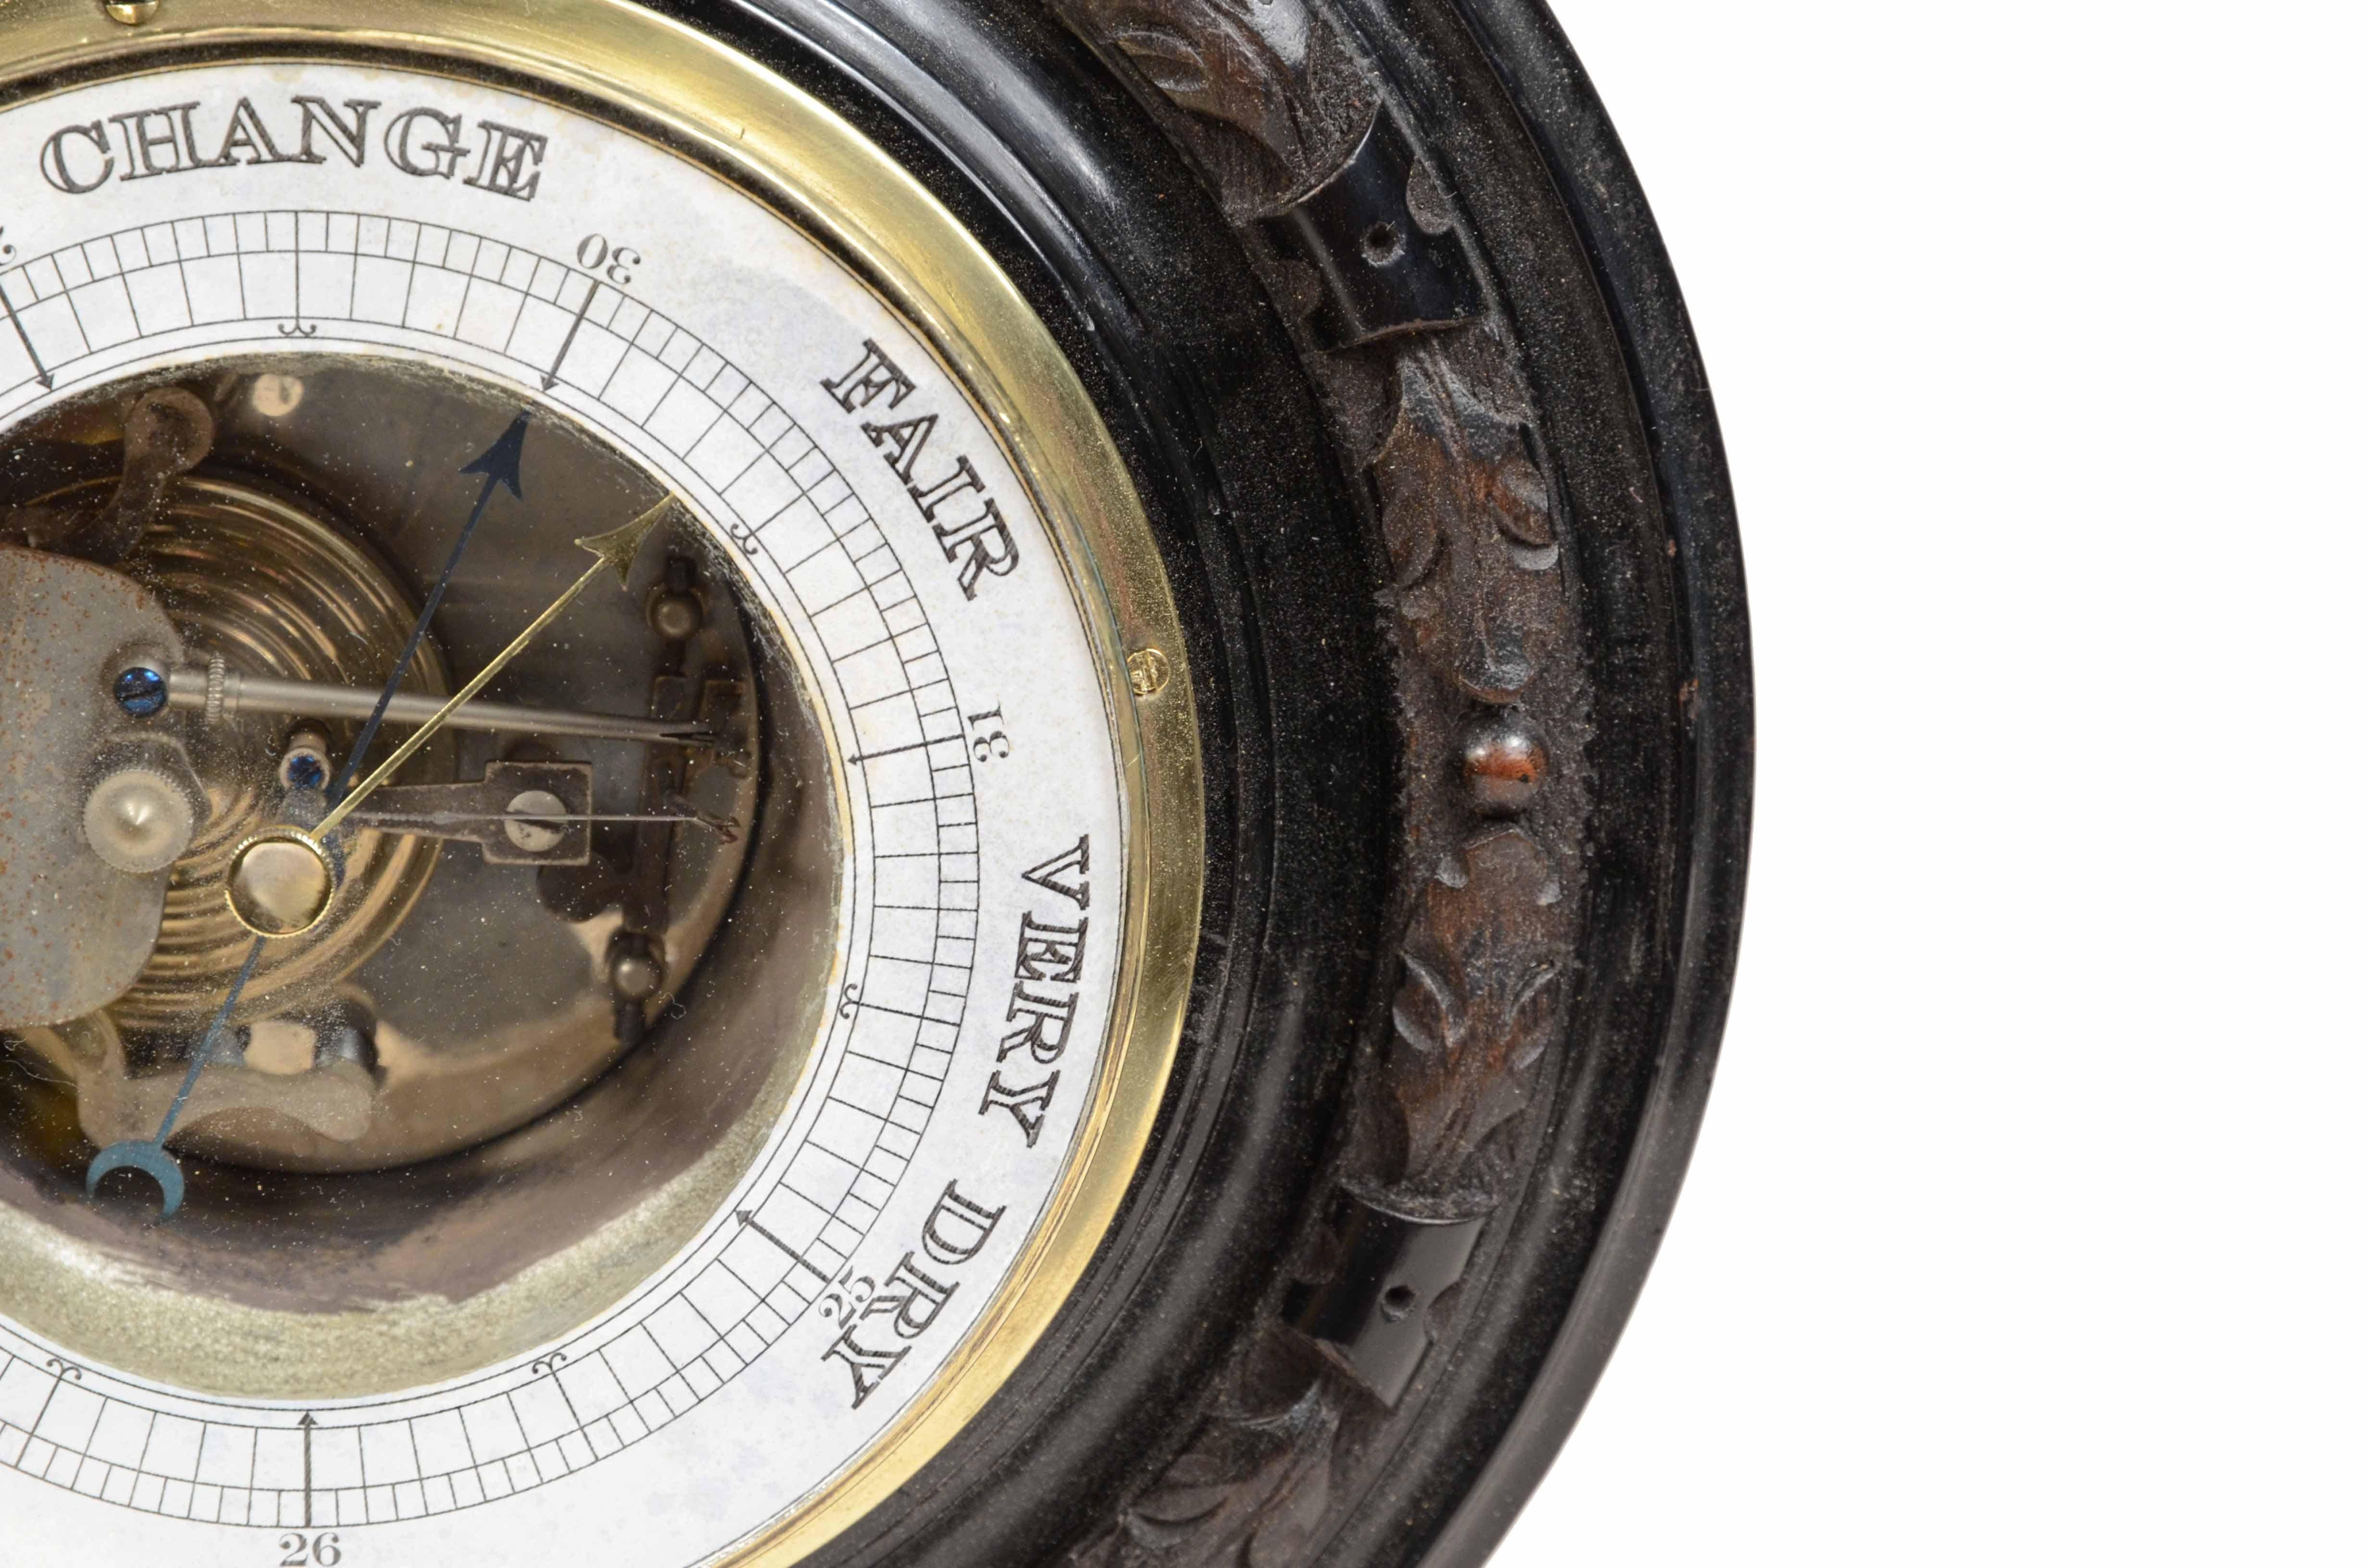 19th century barometer